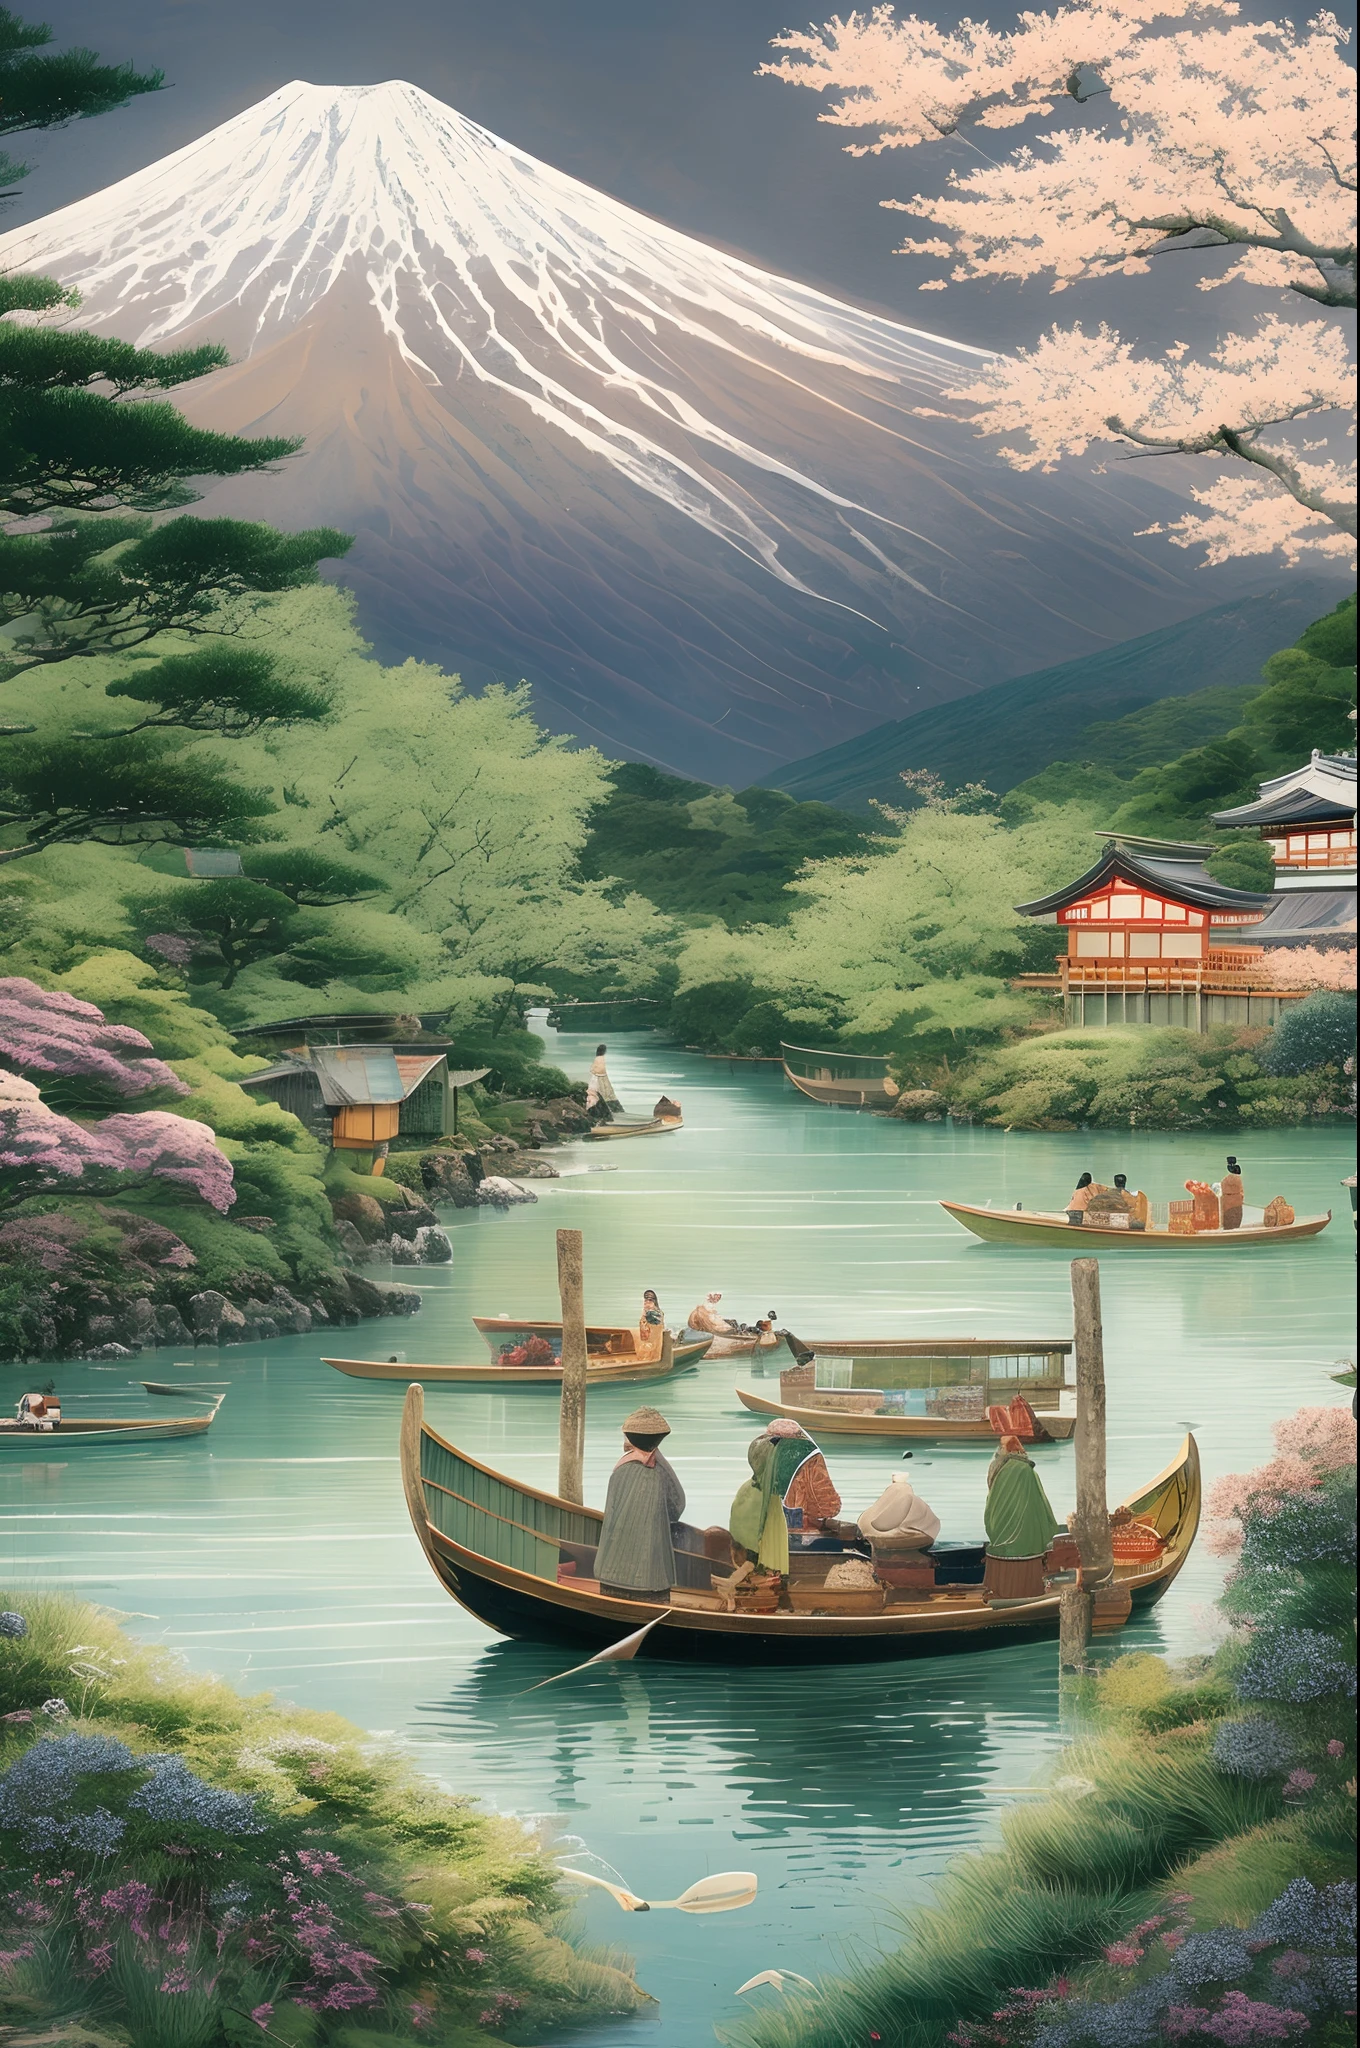 Mont Fuji, un symbole de la beauté naturelle du Japon, entouré d&#39;une verdure luxuriante et d&#39;une rivière immaculée, pêcheurs locaux dans des bateaux traditionnels exerçant leur métier, une scène d&#39;harmonie et de tradition, illustration, art numérique avec une attention aux détails culturels